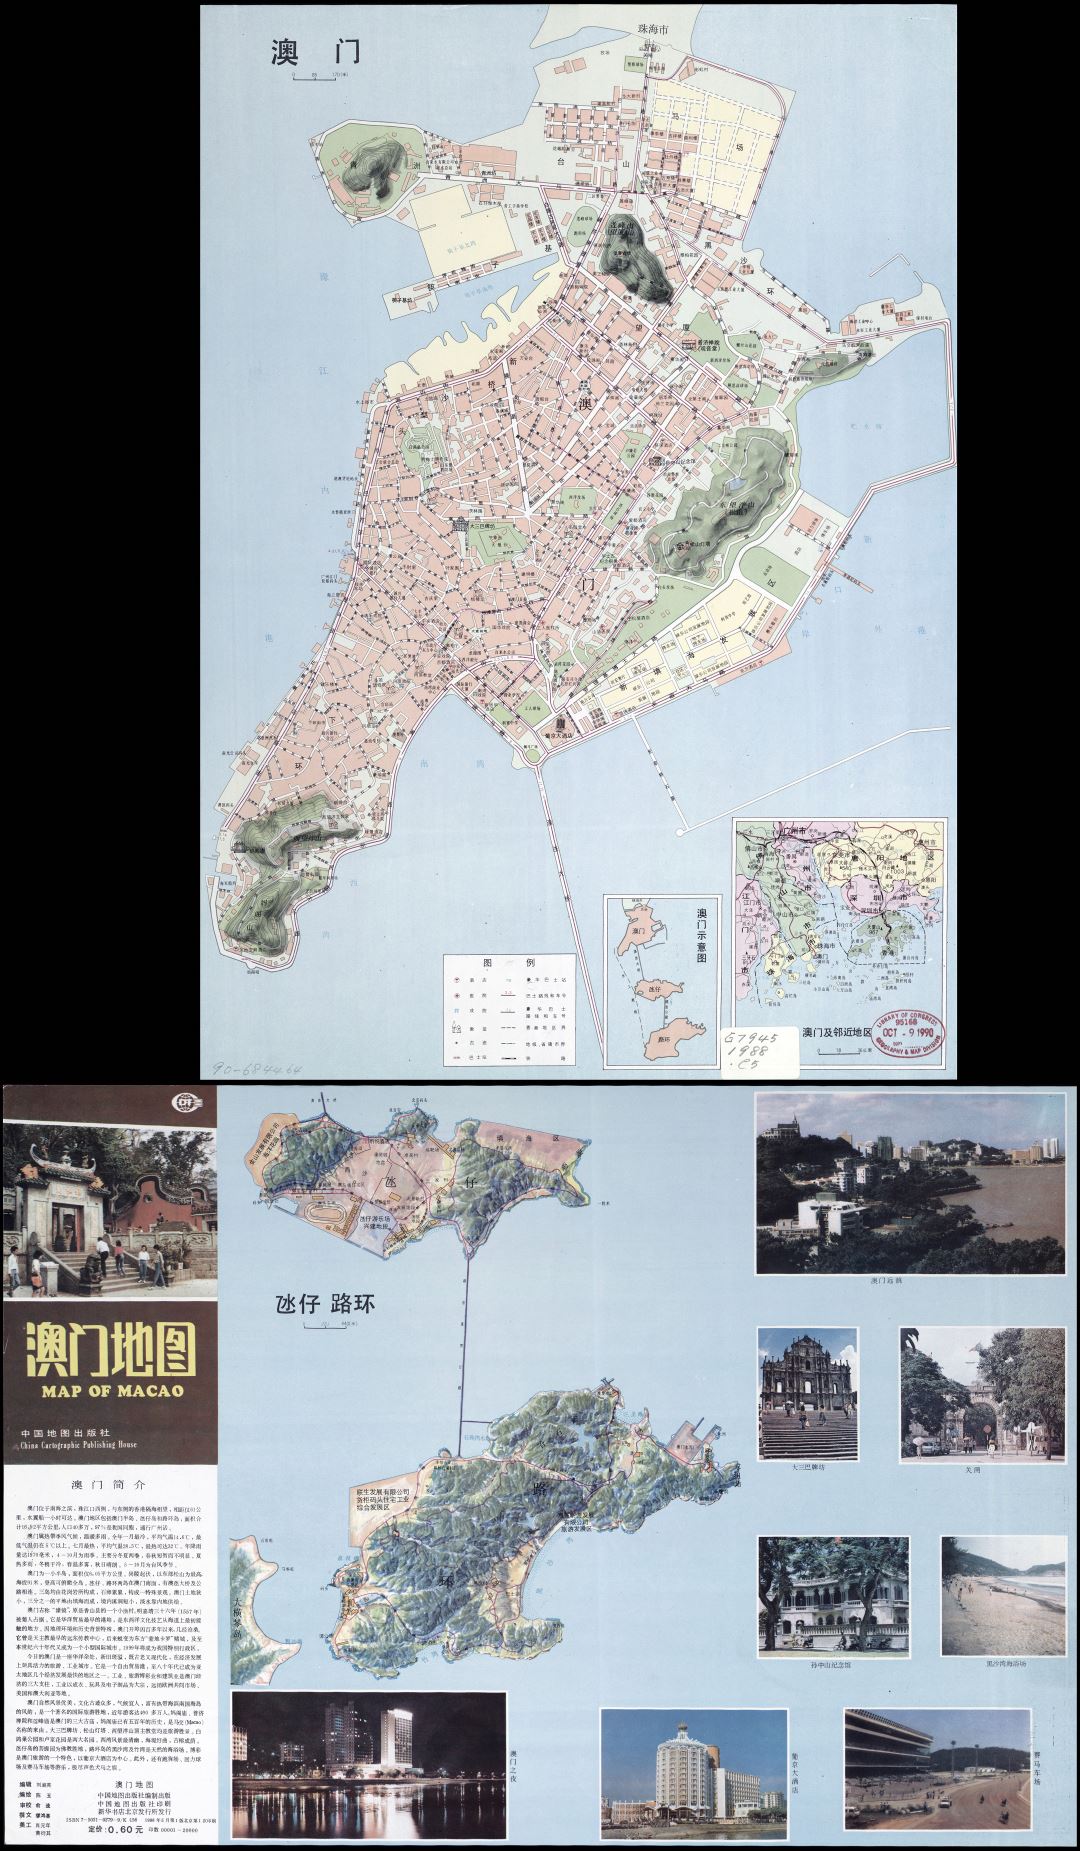 Крупномасштабная детальная туристическая карта Макао на китайском языке - 1988